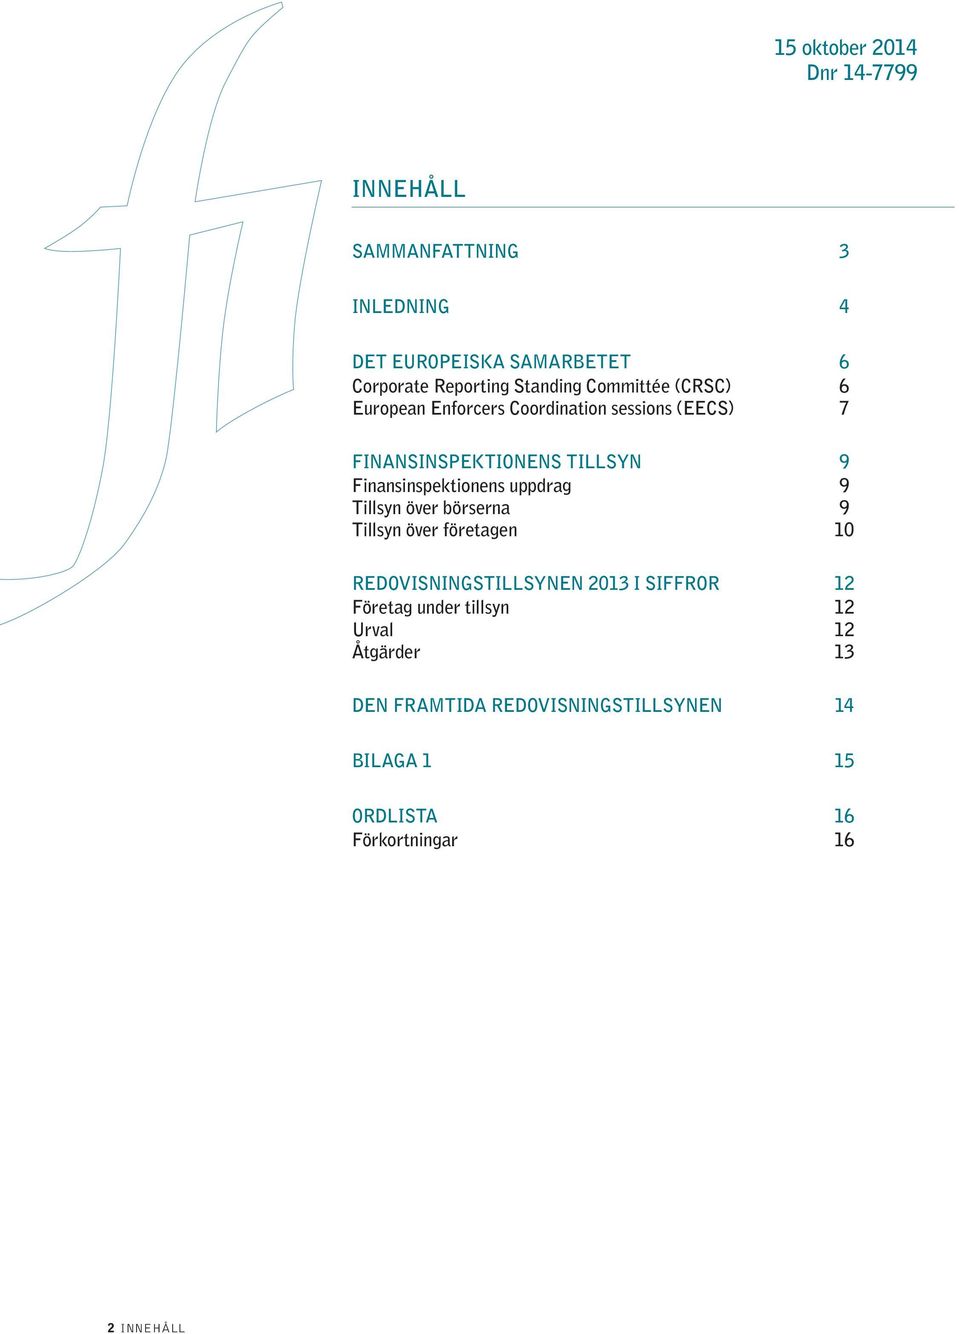 TILLSYN 9 Finansinspektionens uppdrag 9 Tillsyn över börserna 9 Tillsyn över företagen 10 EN 2013 I SIFFROR